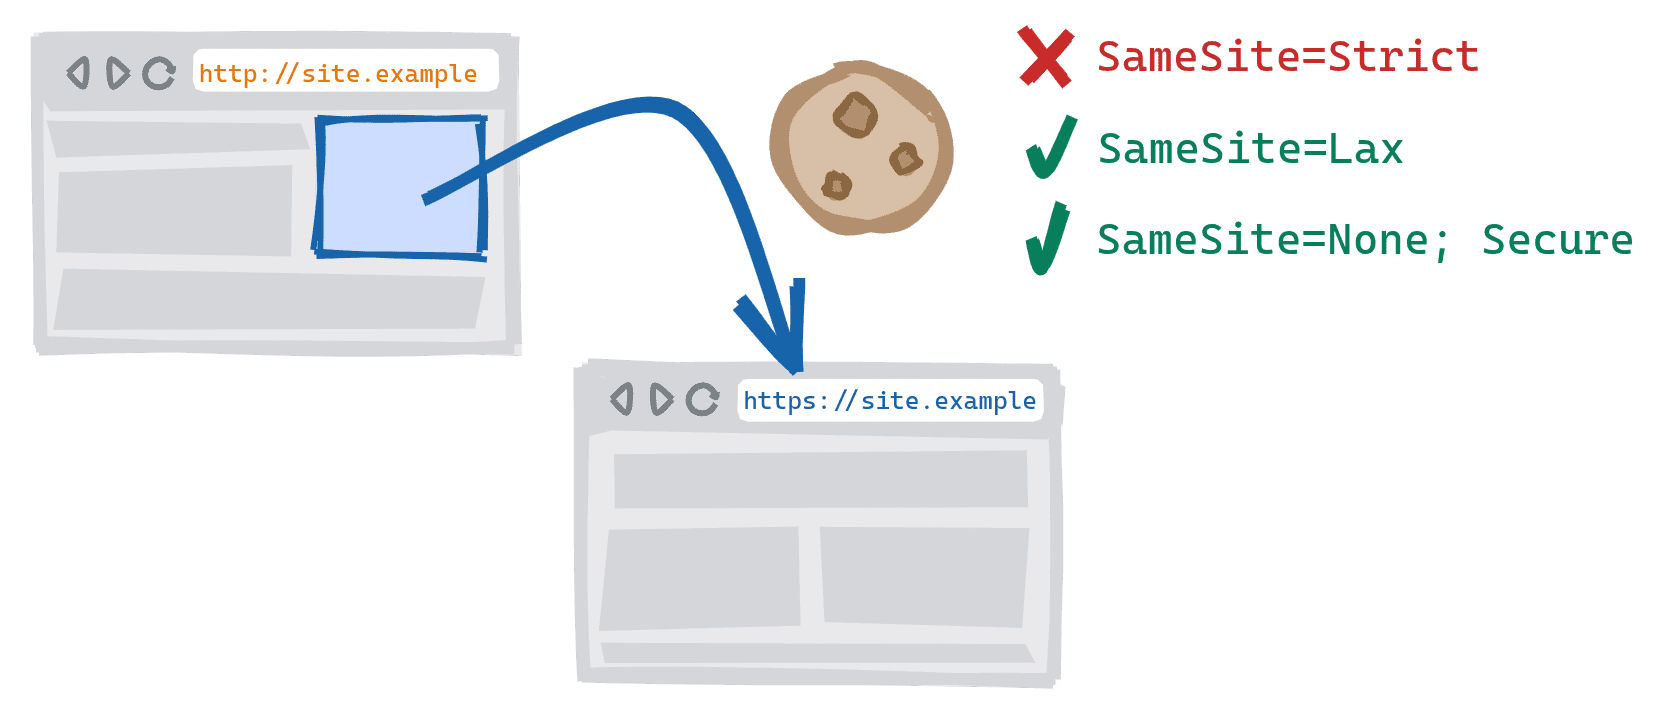 사이트의 안전하지 않은 HTTP 버전에서 보안 HTTPS 버전으로 연결되는 링크를 따라가는 교차 스키마 탐색입니다. SameSite=Strict 주소가 차단됨, SameSite=Lax and SameSite=None; 보안 쿠키가 허용됩니다.